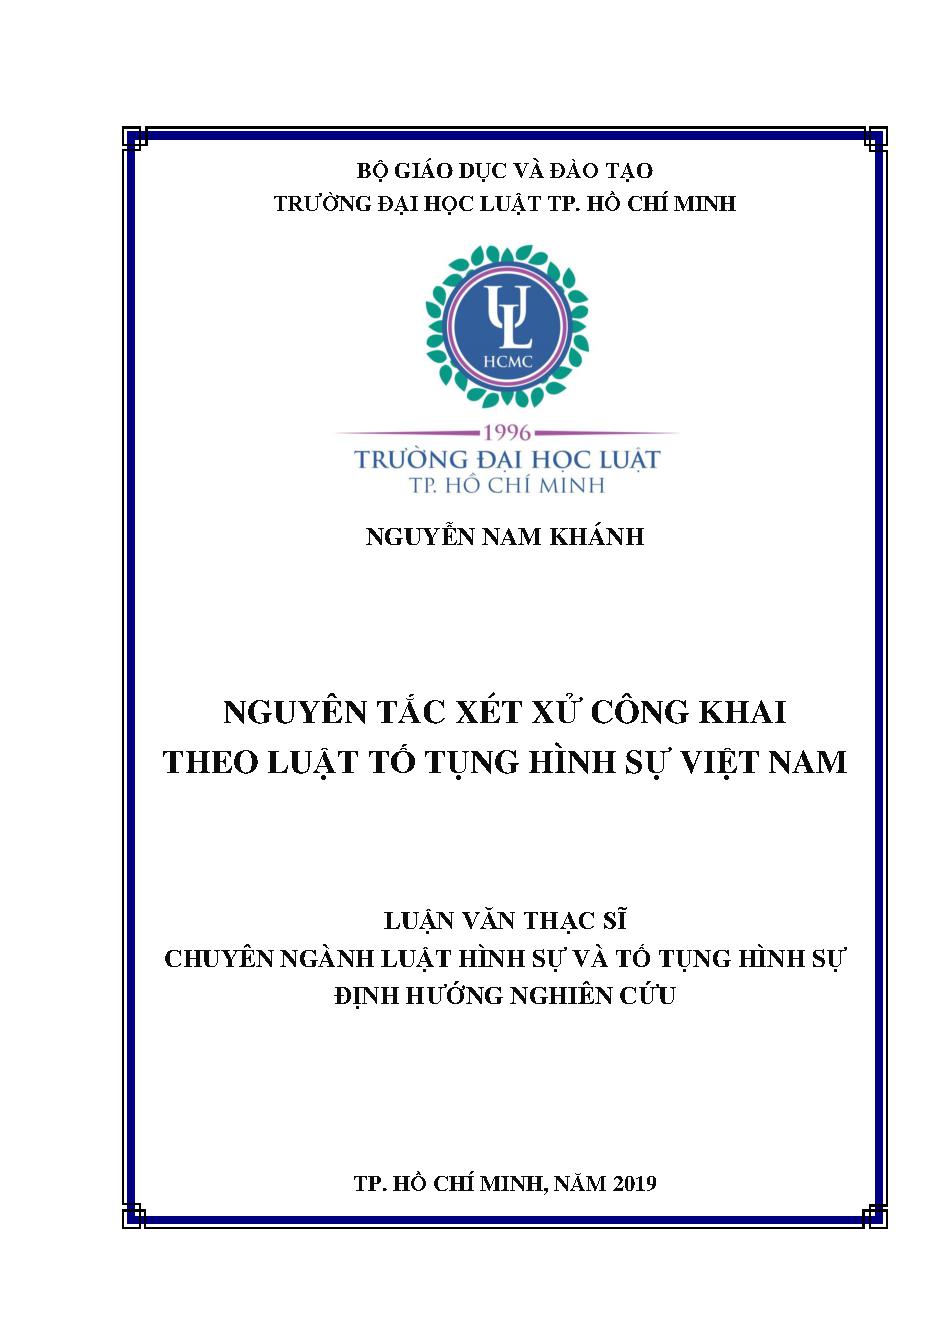 Nguyên tắc xét xử công khai theo luật tố tụng hình sự Việt Nam